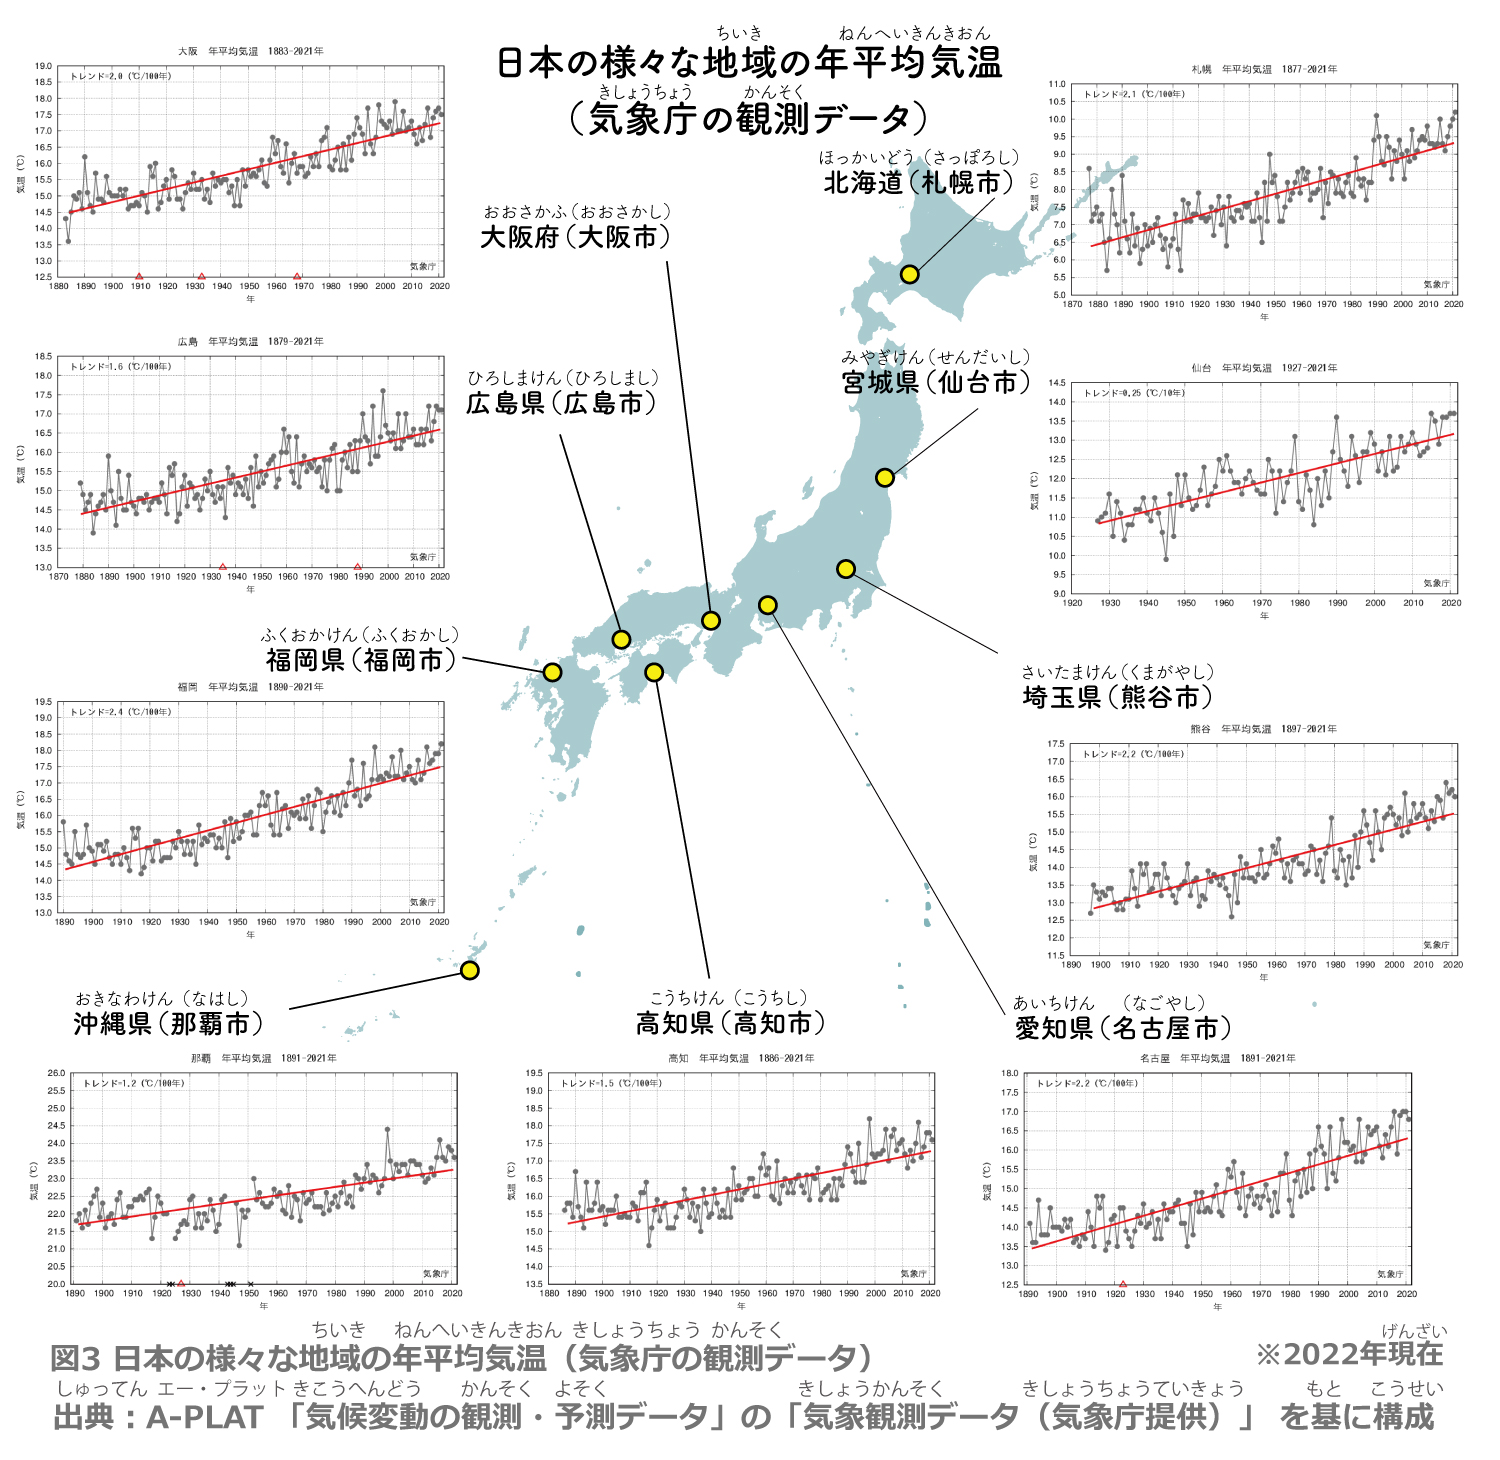 日本の様々な地域の年平均気温（気象庁の観測データ）